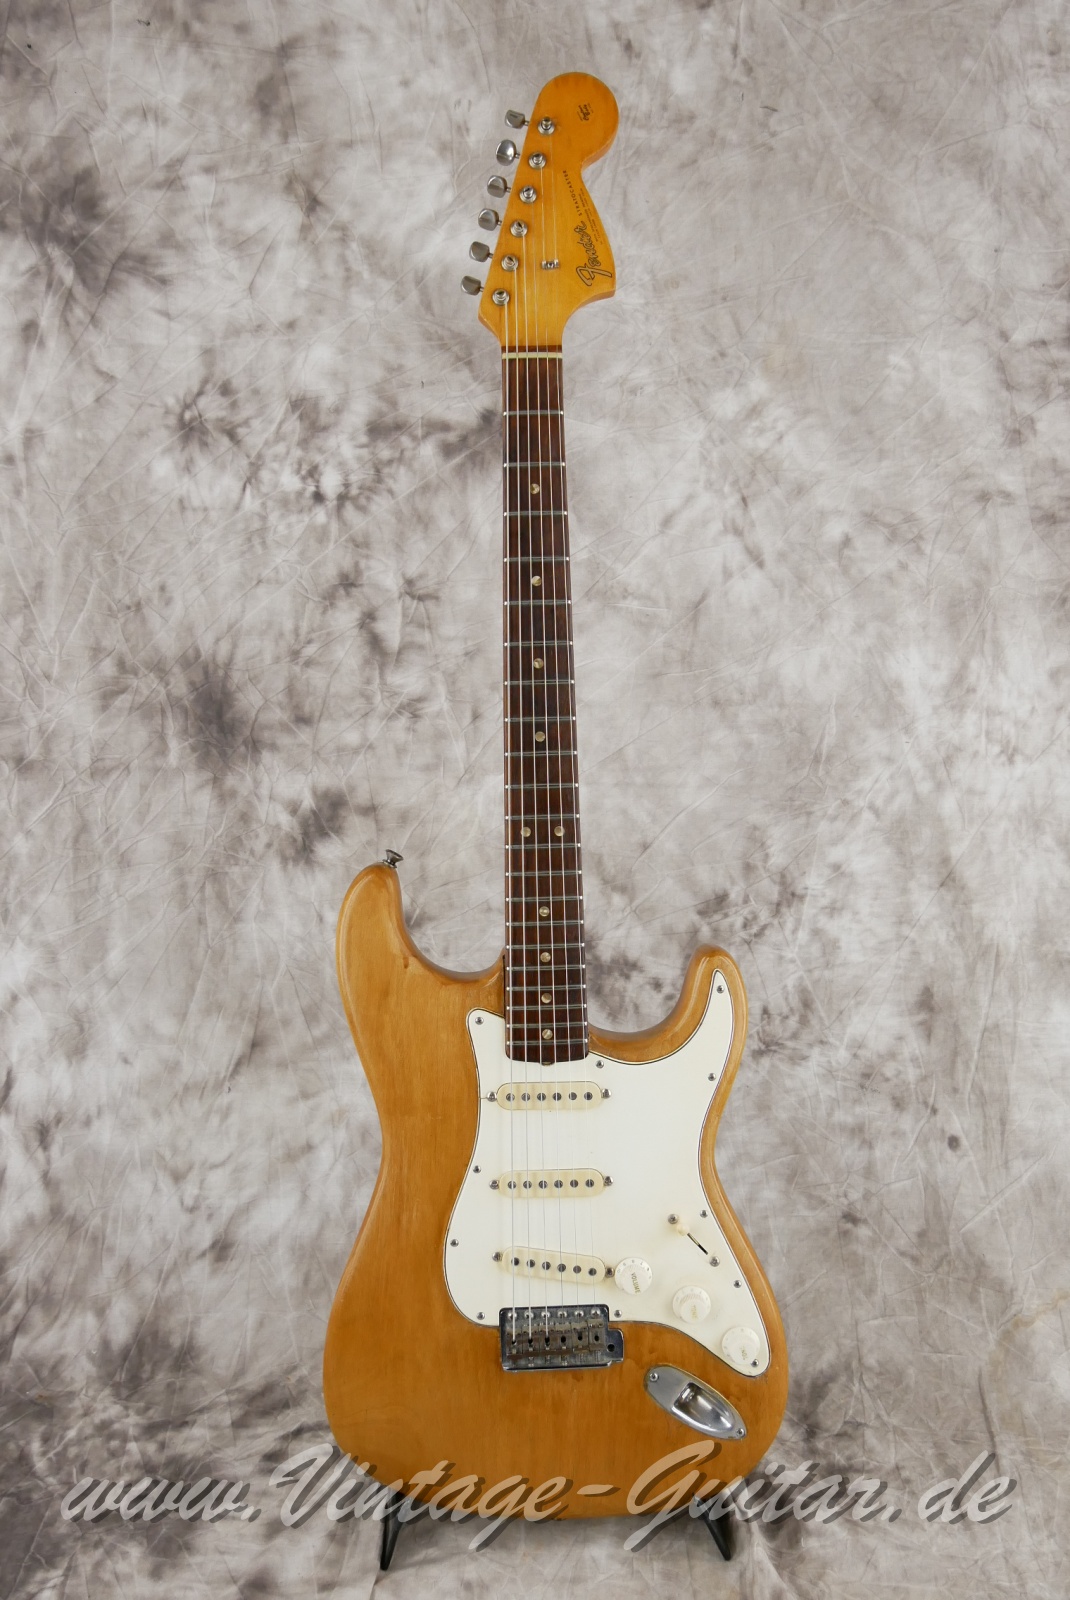 Fender_Stratocaster_body_stripped_1966-001.JPG